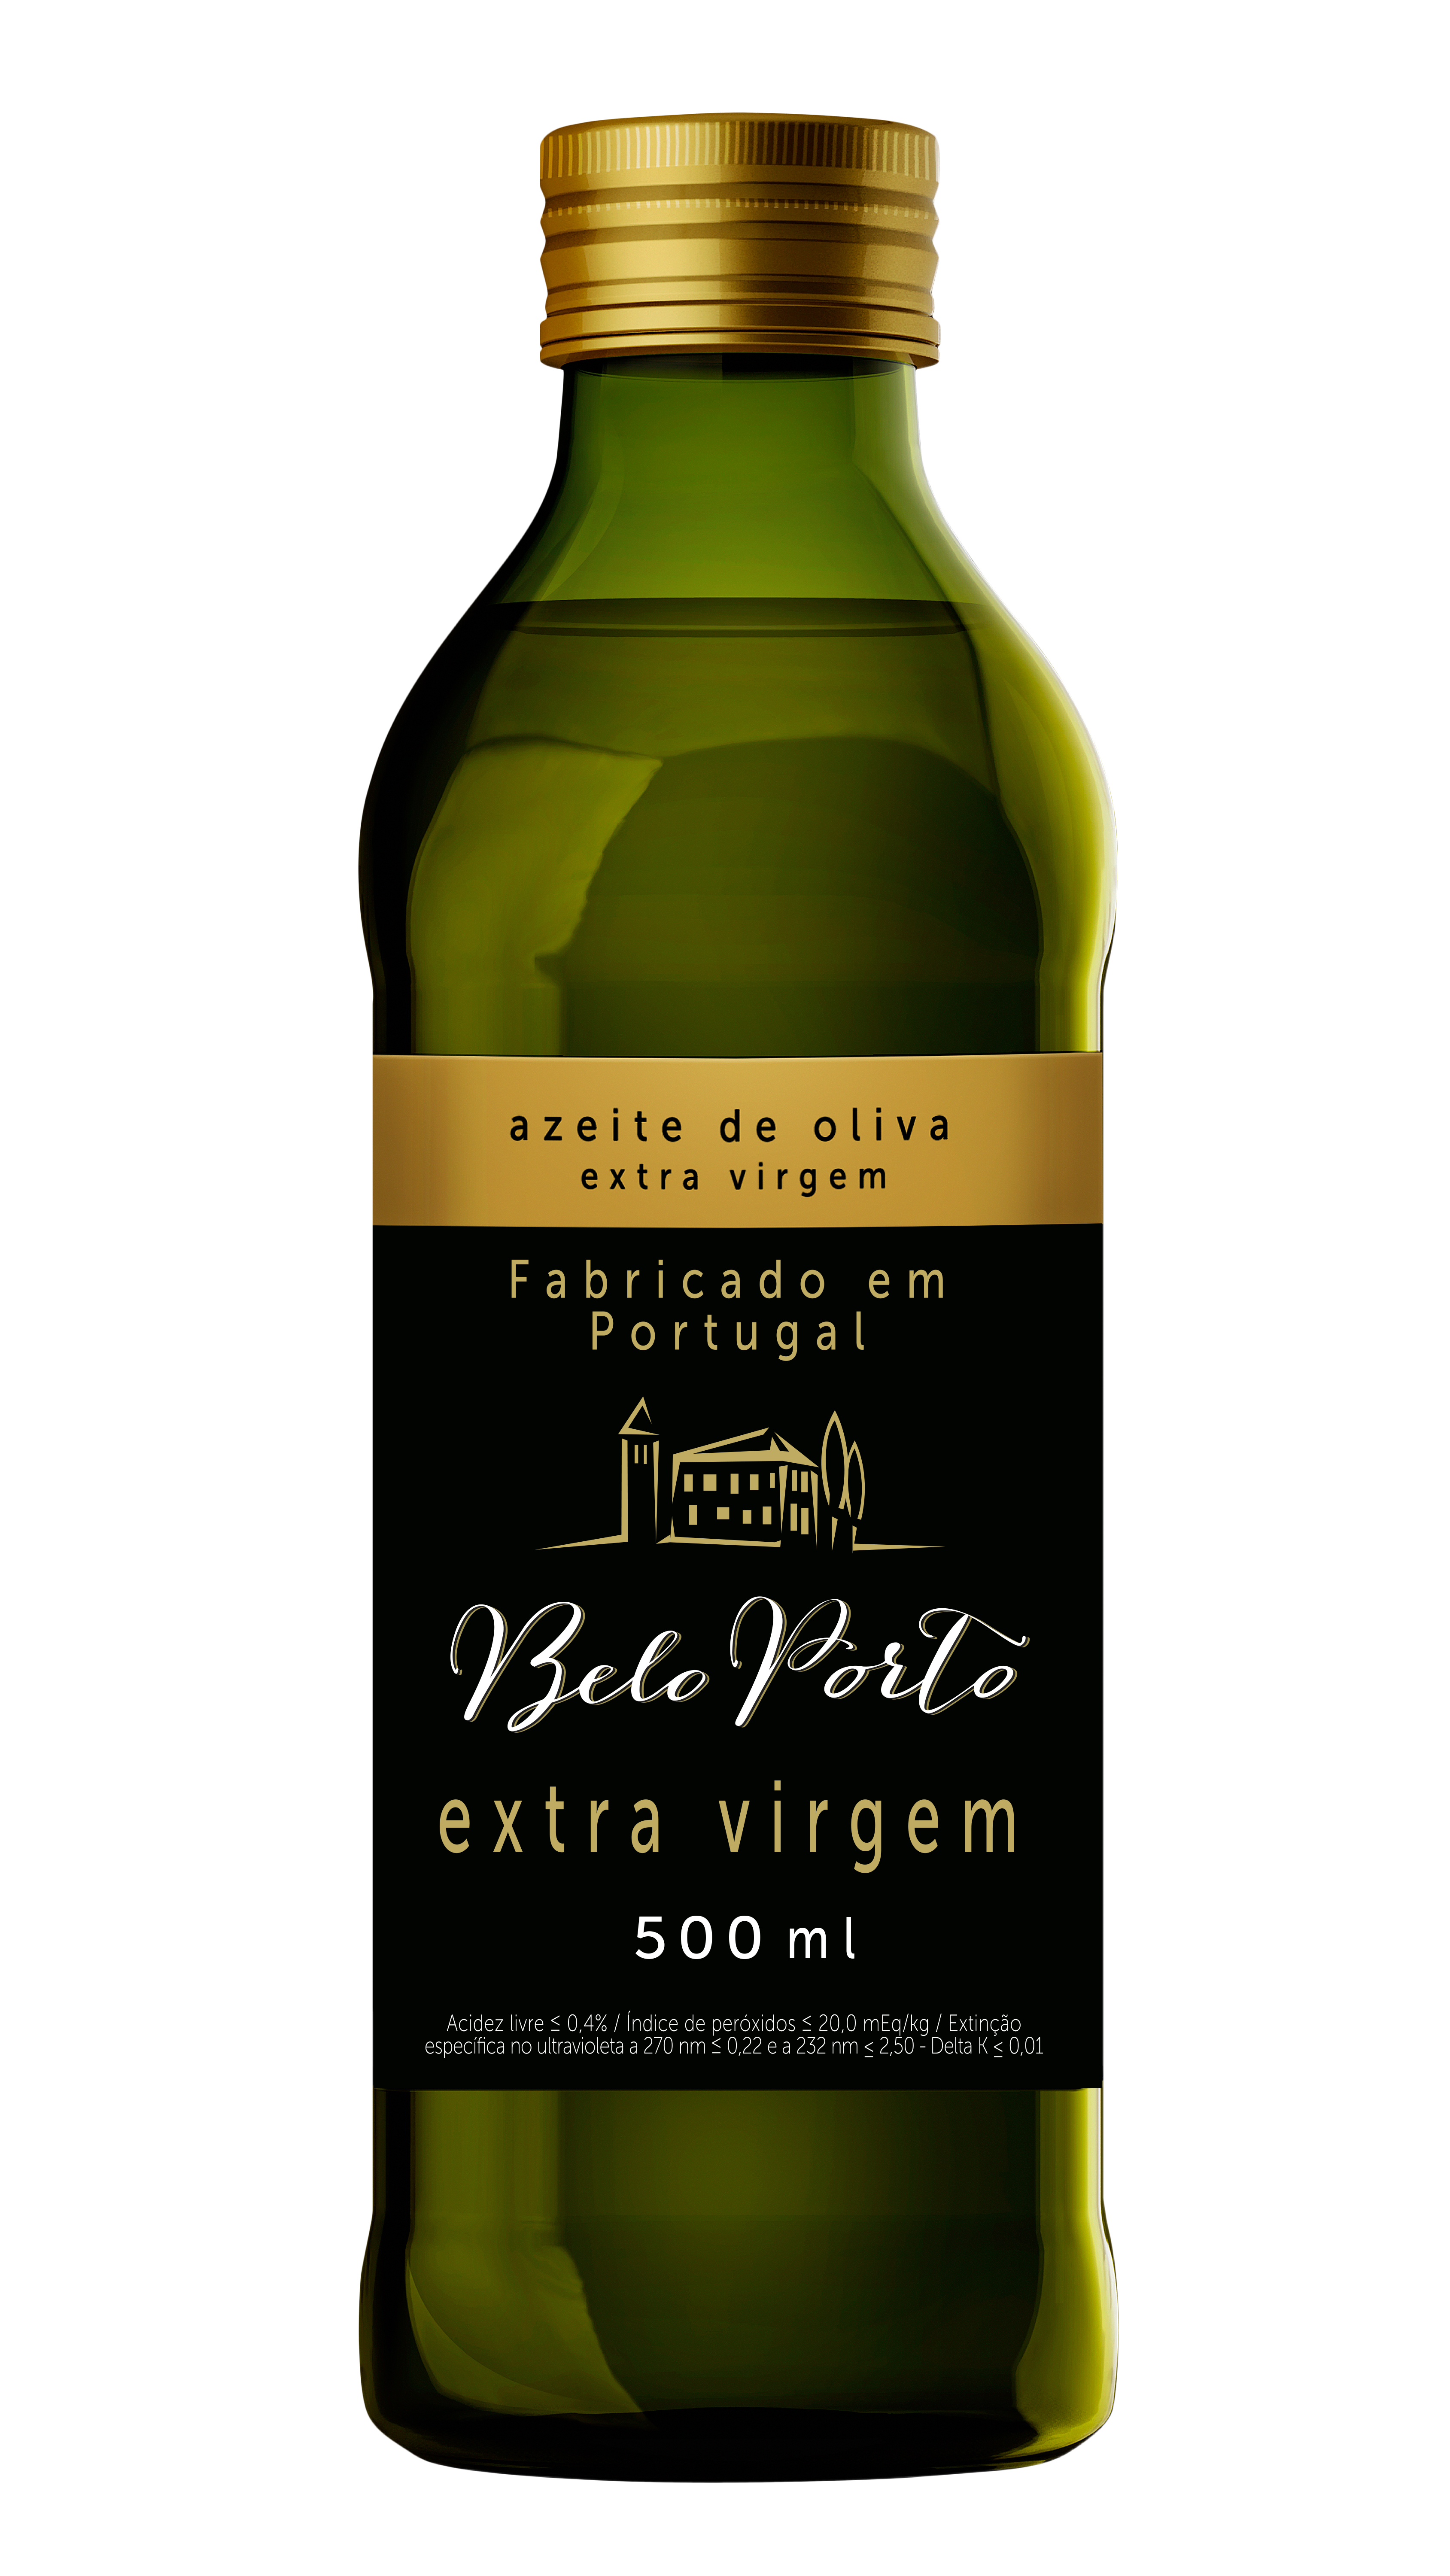 Azeite de Oliva Extra virgem Belo Porto (Português) 500 ml